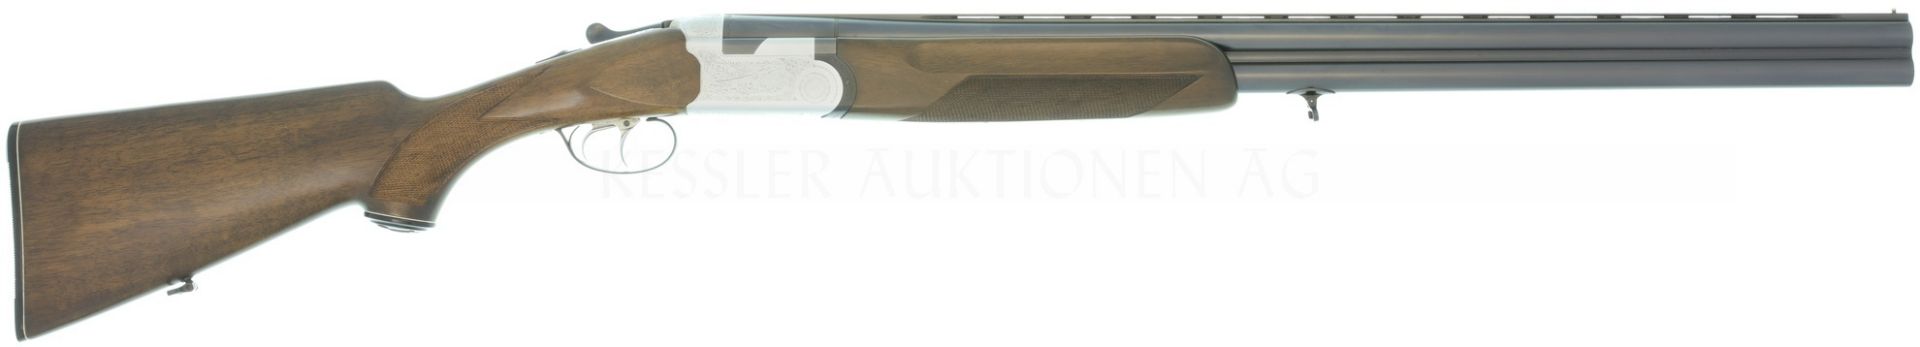 Bockdoppelflinte, Beretta Mod. S56E, Kal. 12/70.